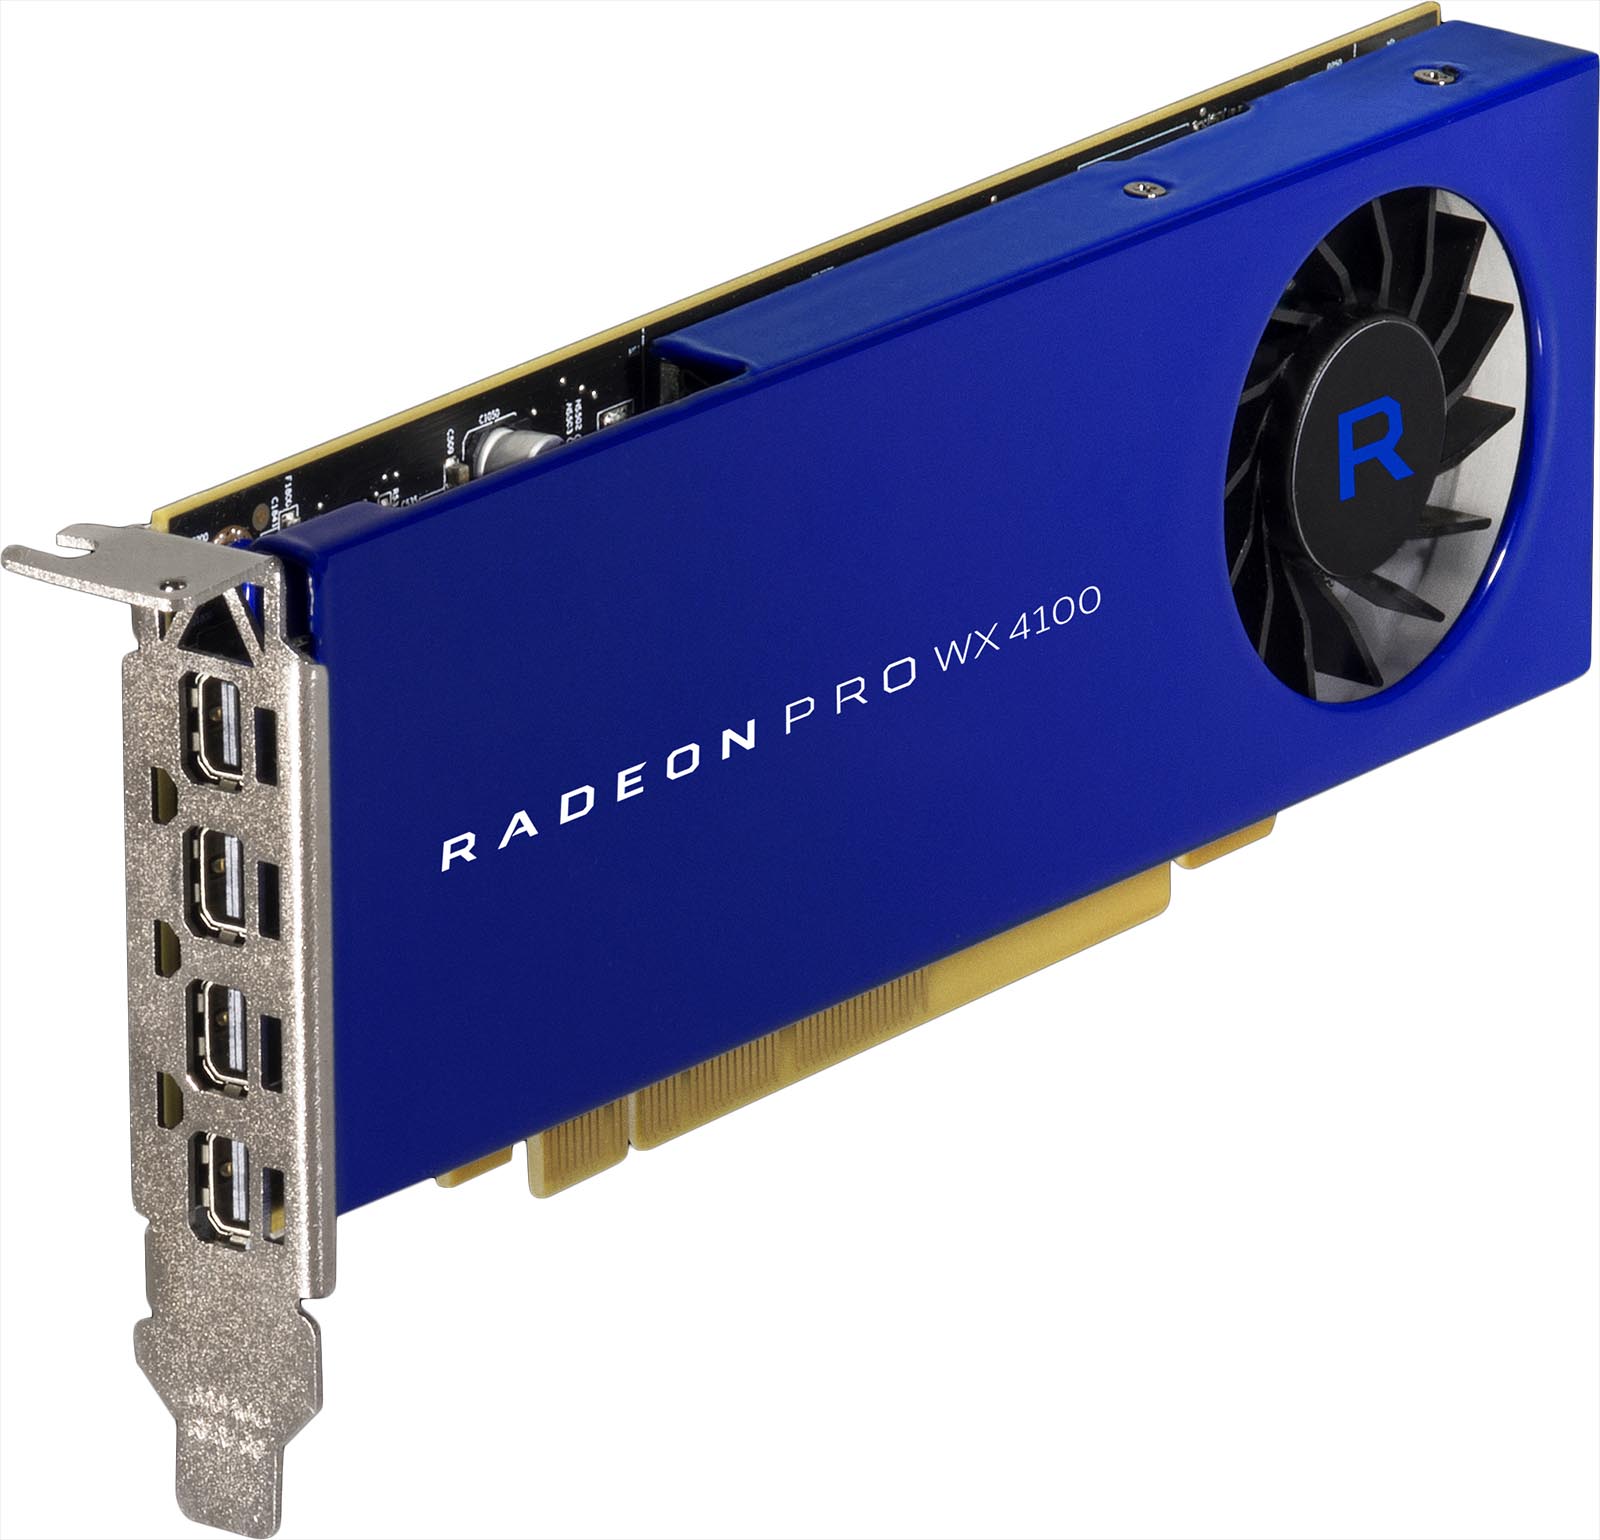 Conheça "Radeon Pro" a GPU da AMD que vem com 32GB de memória e suporta imagens em 8K